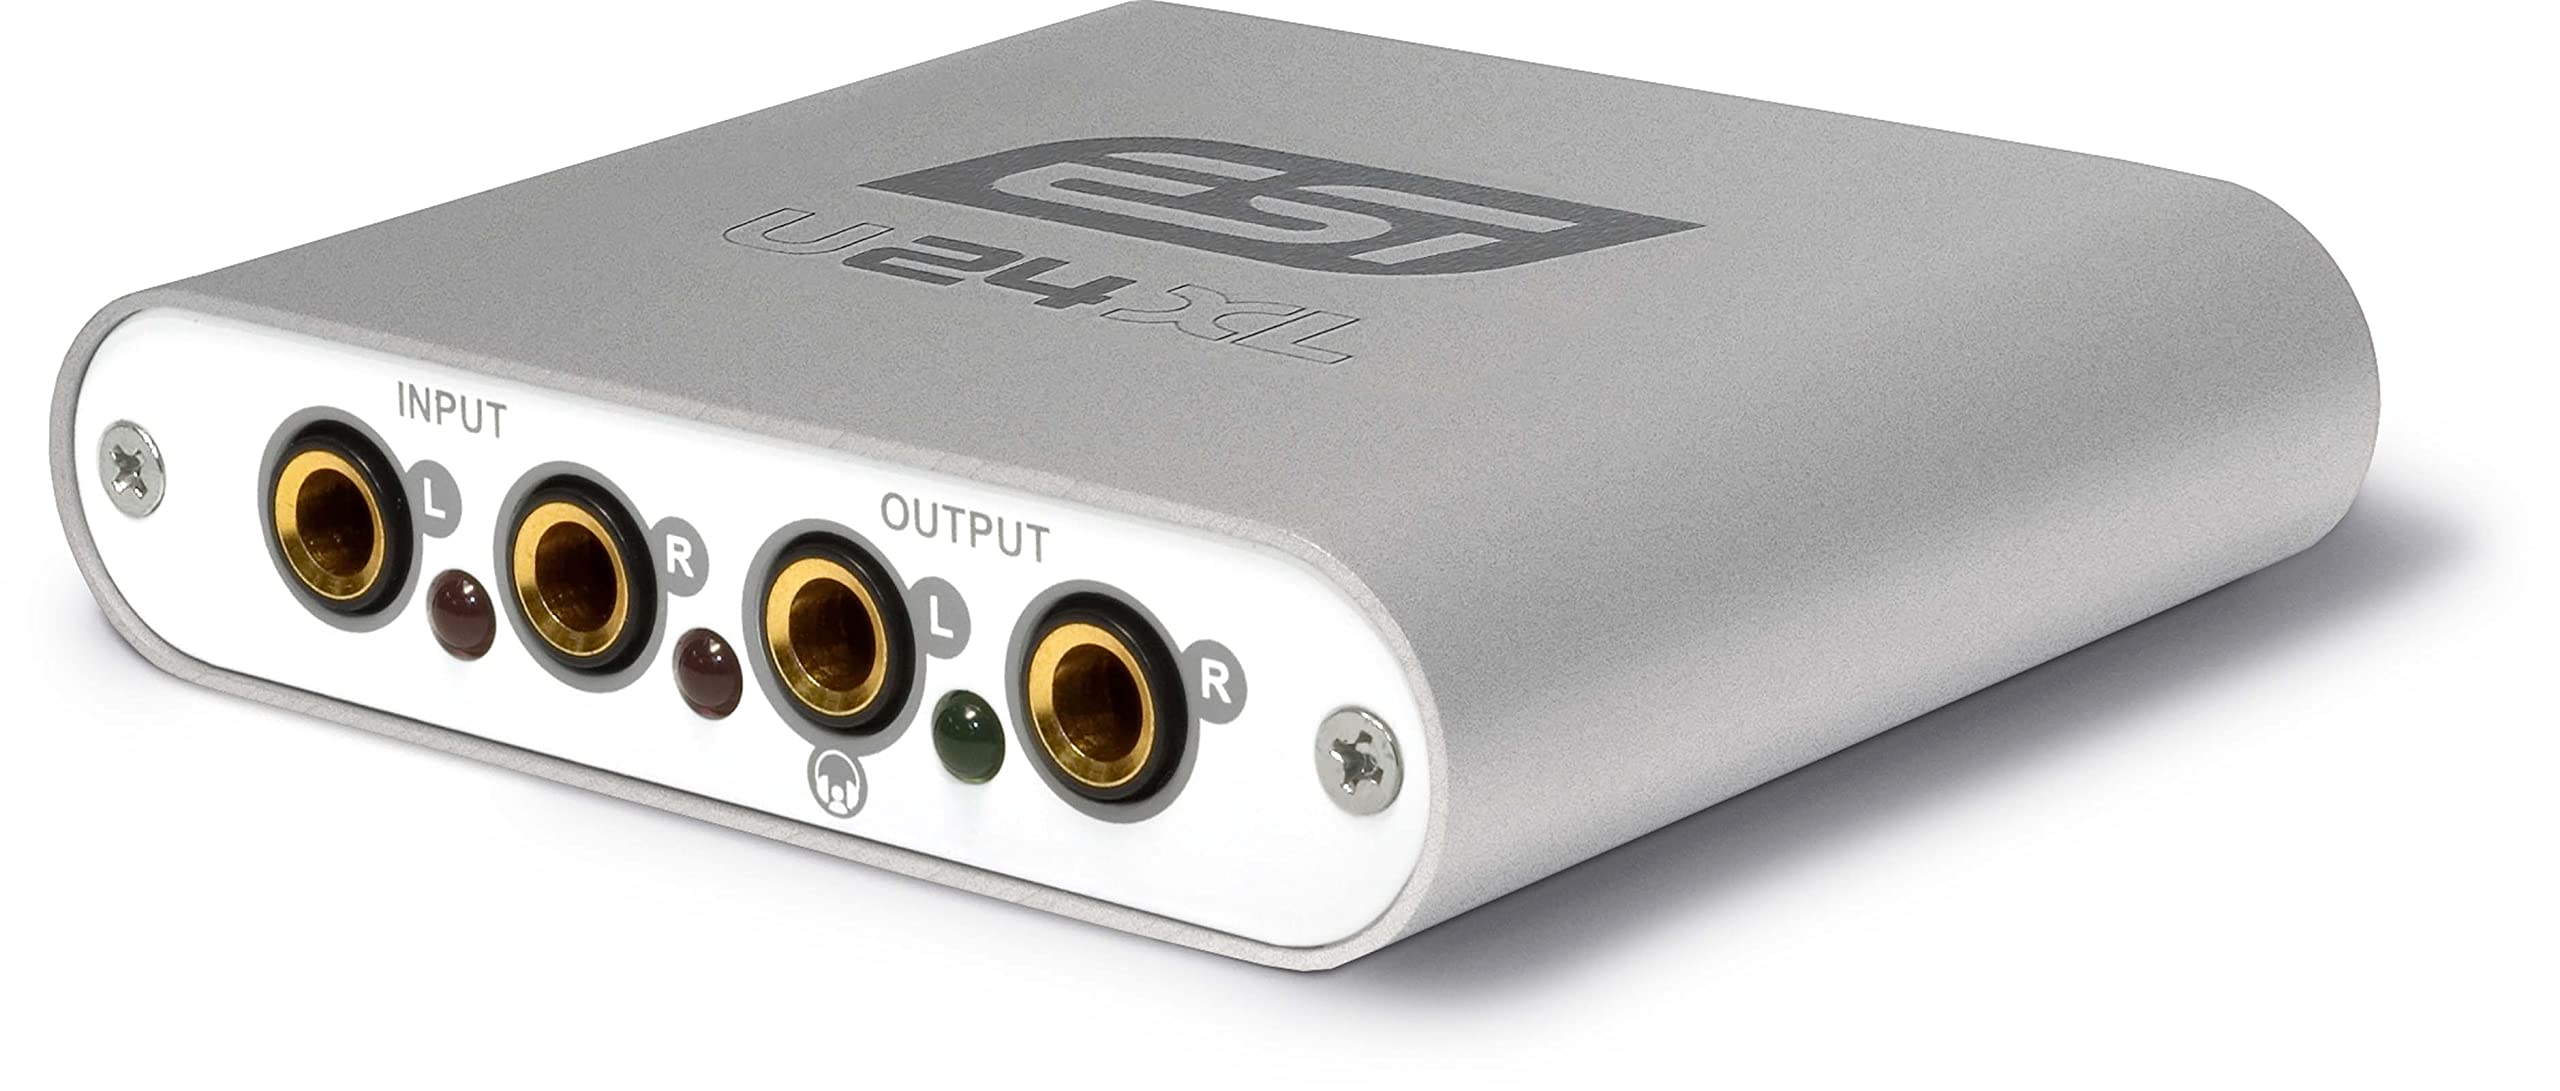 ESI U24 XL | 24-bit USB Audiointerface für PC & Mac mit S/PDIF I/O